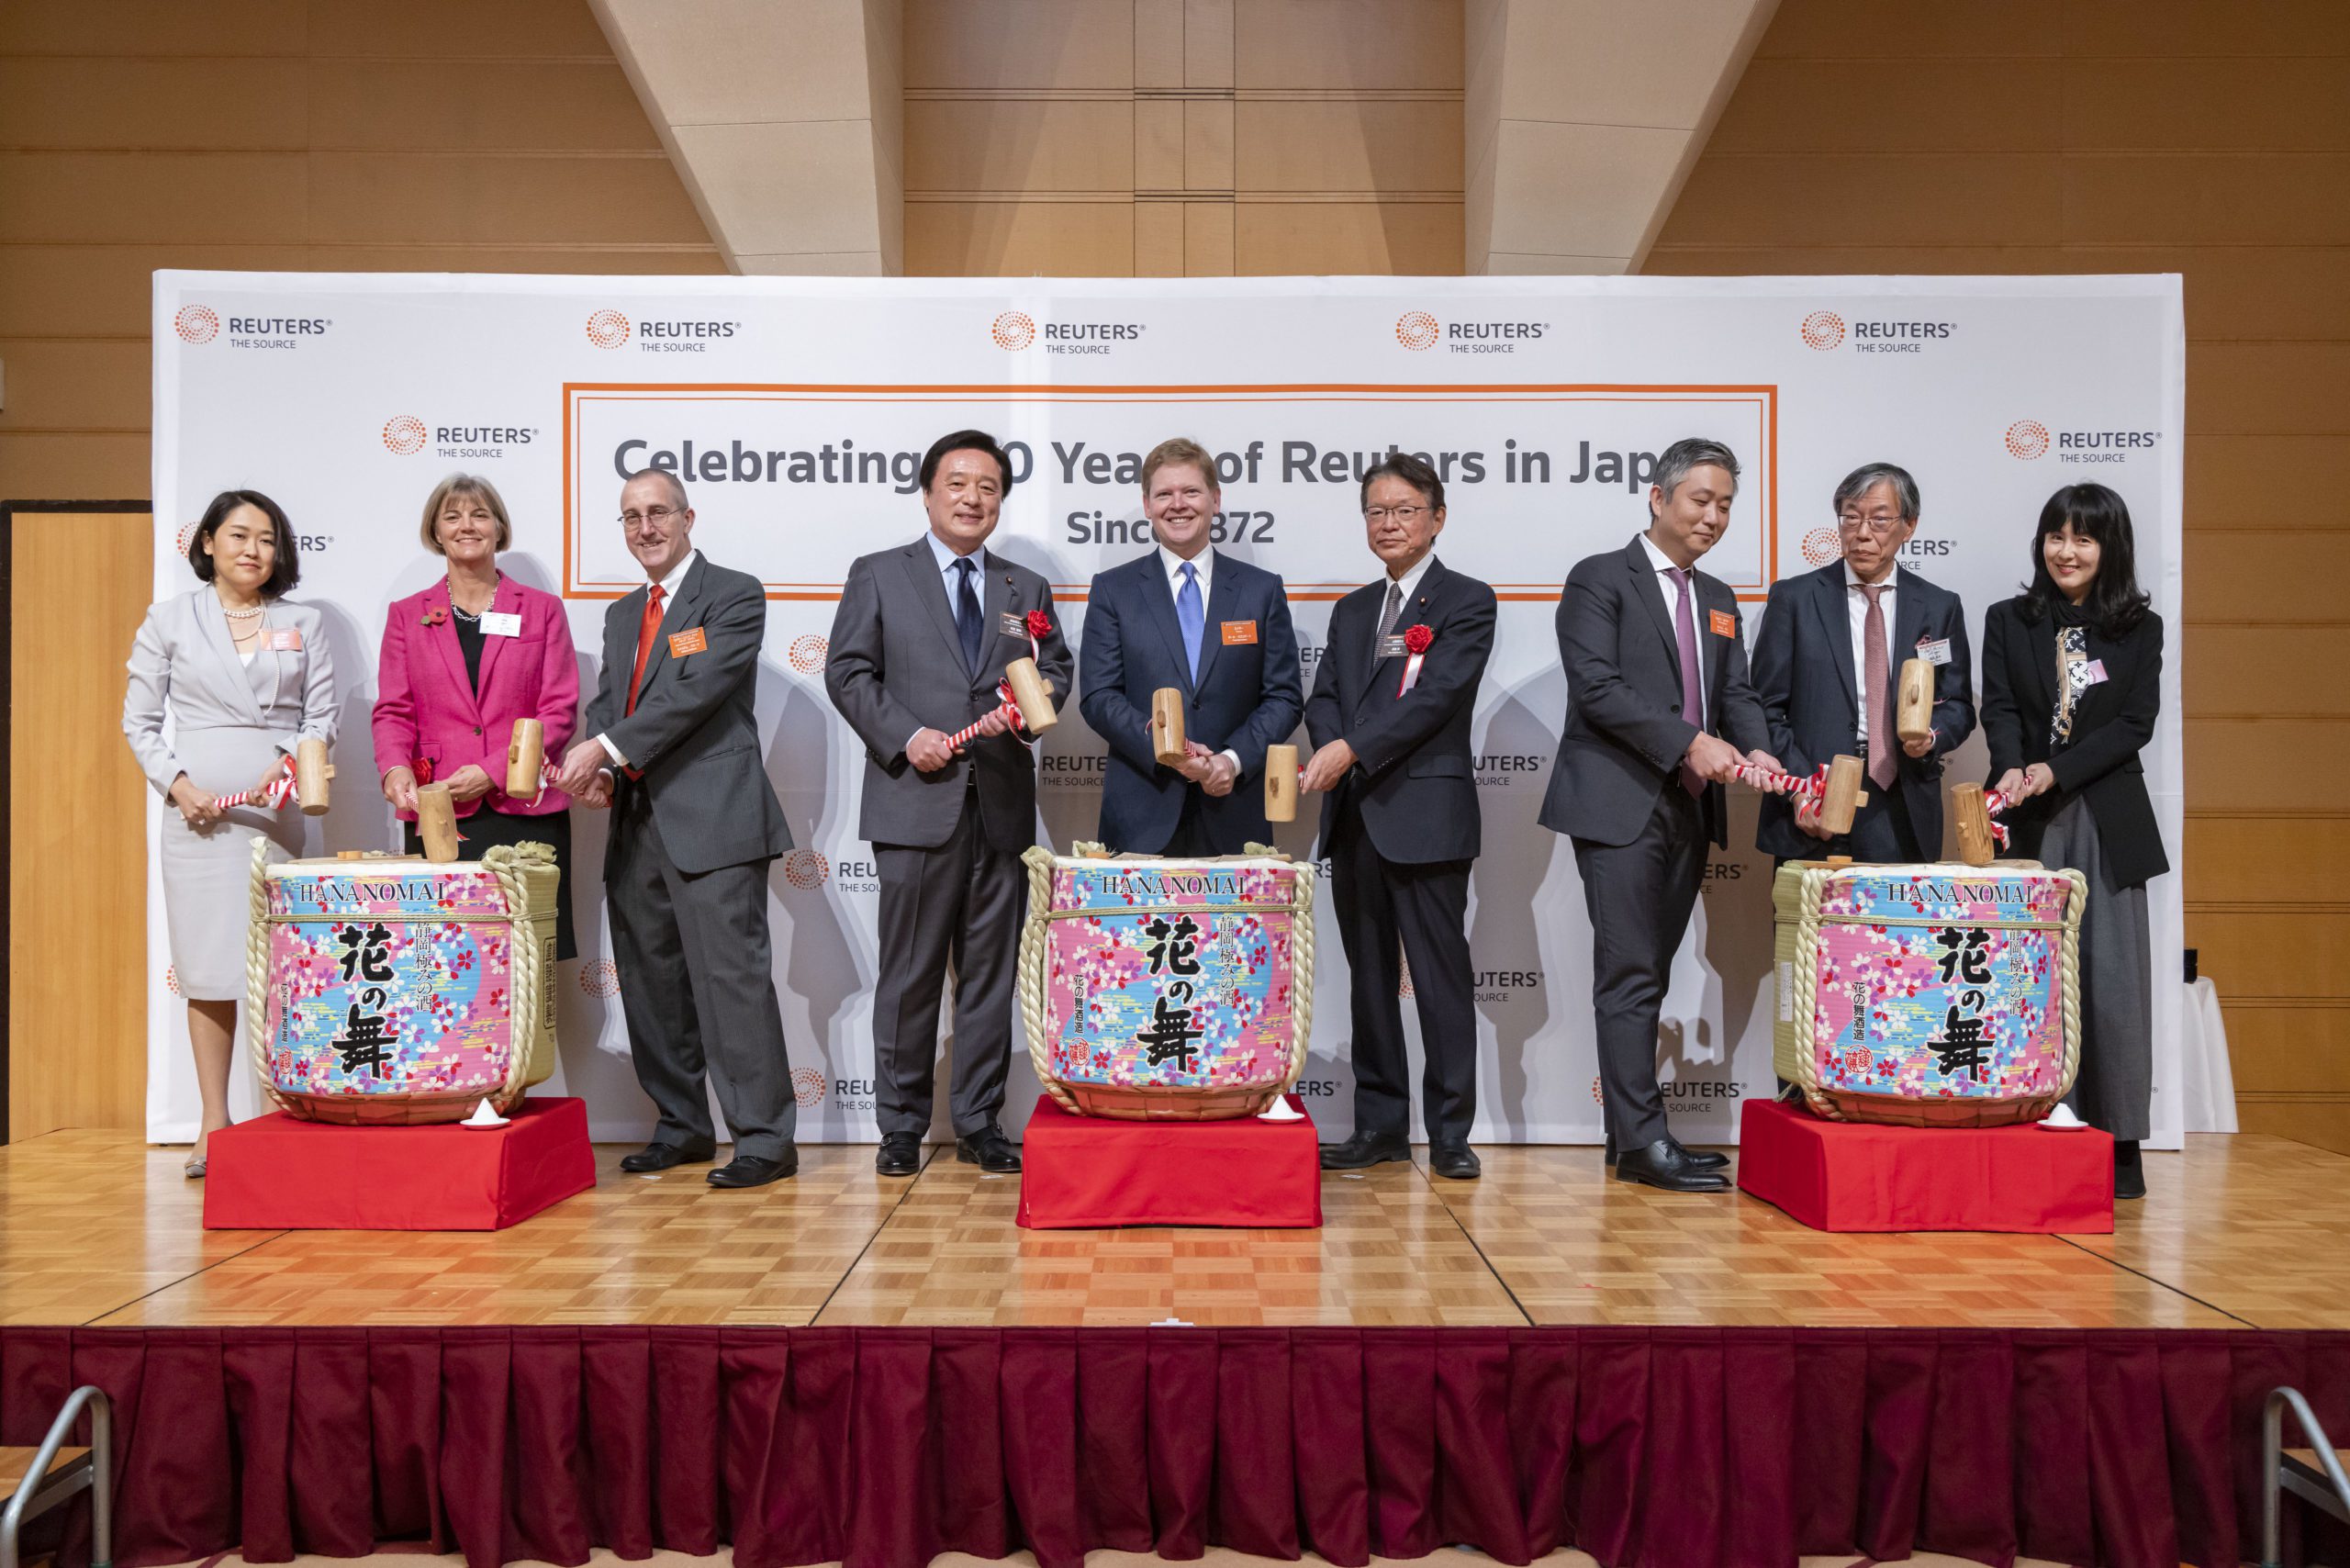 Reuters Japan 150 Event